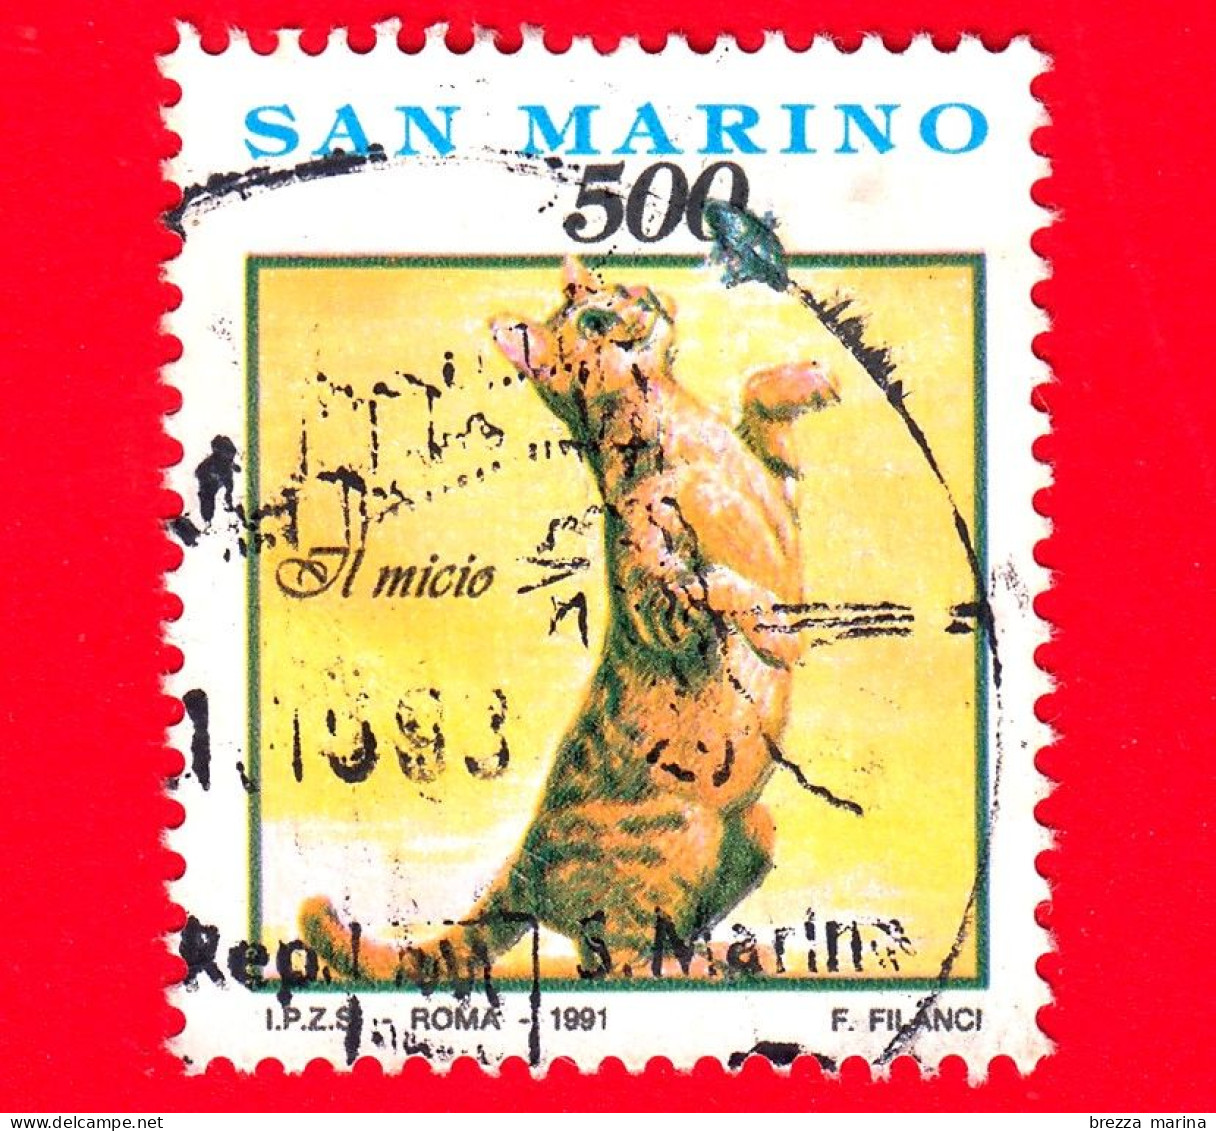 SAN MARINO - Usato - 1991 - Cose Gesti Ed Affetti Di Ogni Giorno - 1ª Emissione - Il Micio - Gatto - 500 - Used Stamps